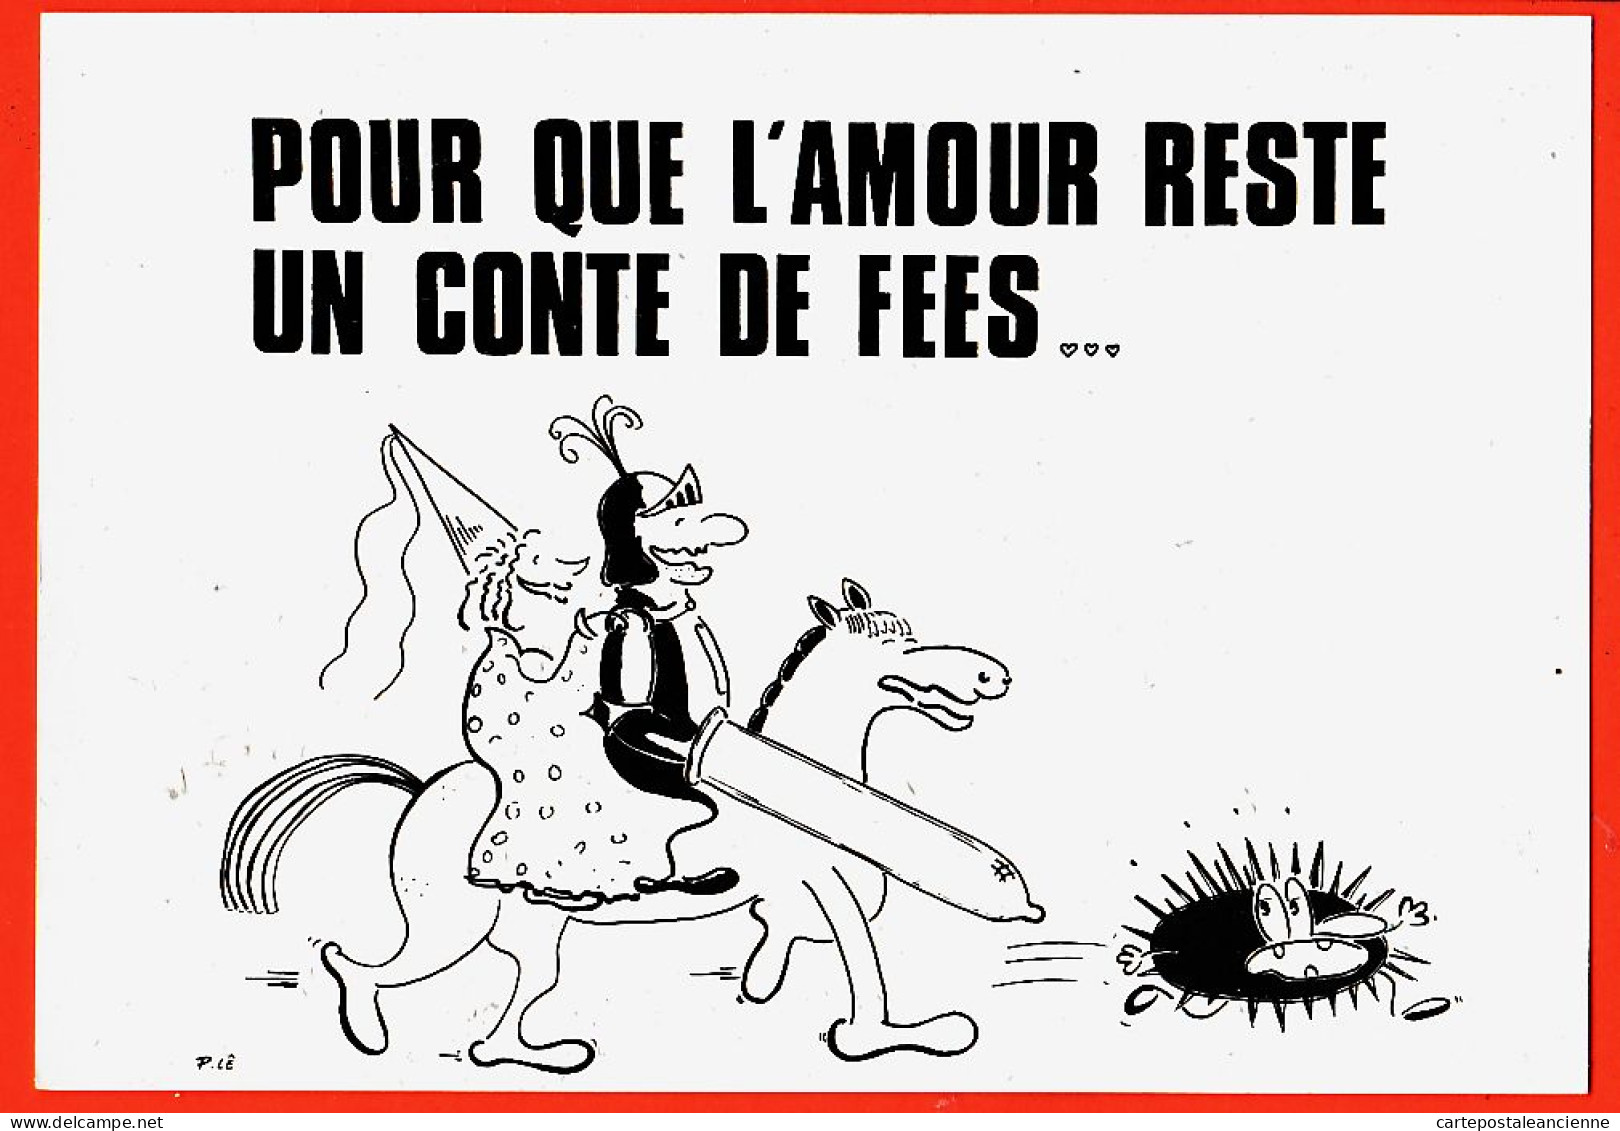 05540 / ⭐ ◉ PARIS XIV Concours Affiches SIUMP Fb ST-HONORE Paul LE DEA IFP Prix Humour SIDA Que AMOUR Reste Conte FEES - Salute